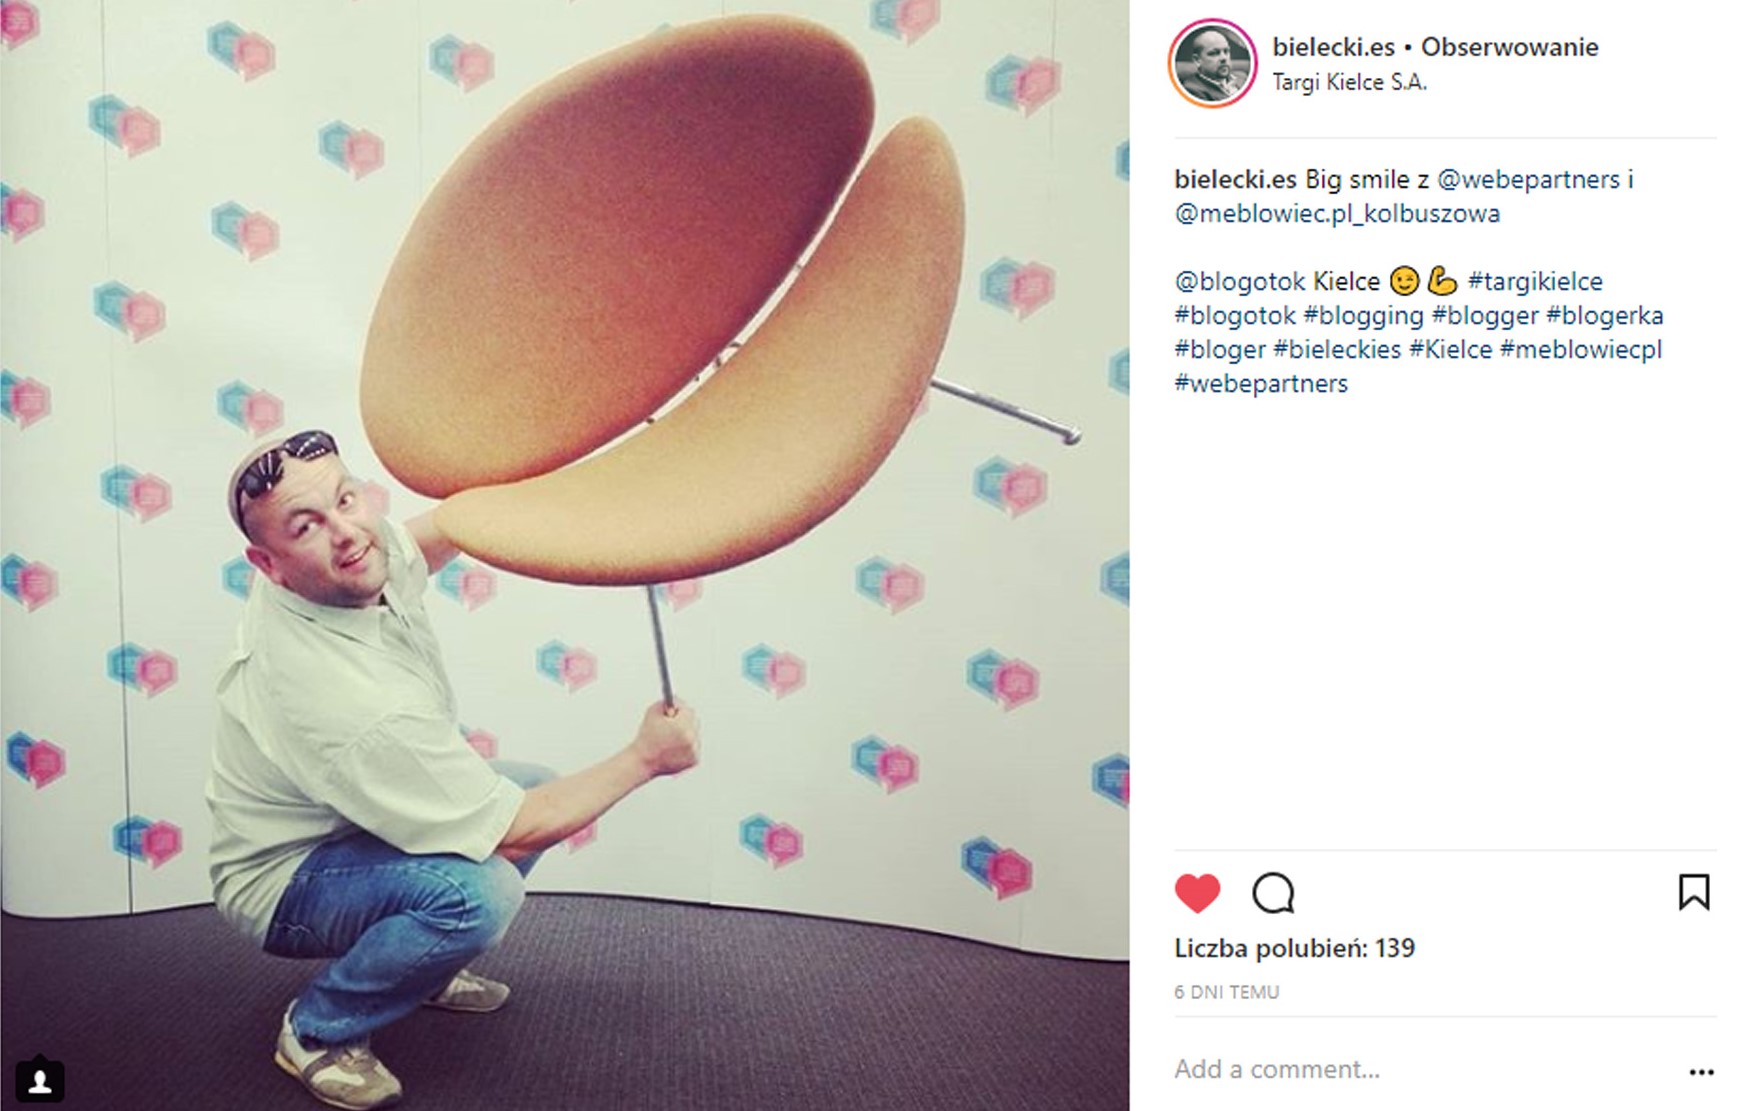 bloger bielecki.es pozujący z krzesłem ze sklepu meblowiec screenshot z instagrama